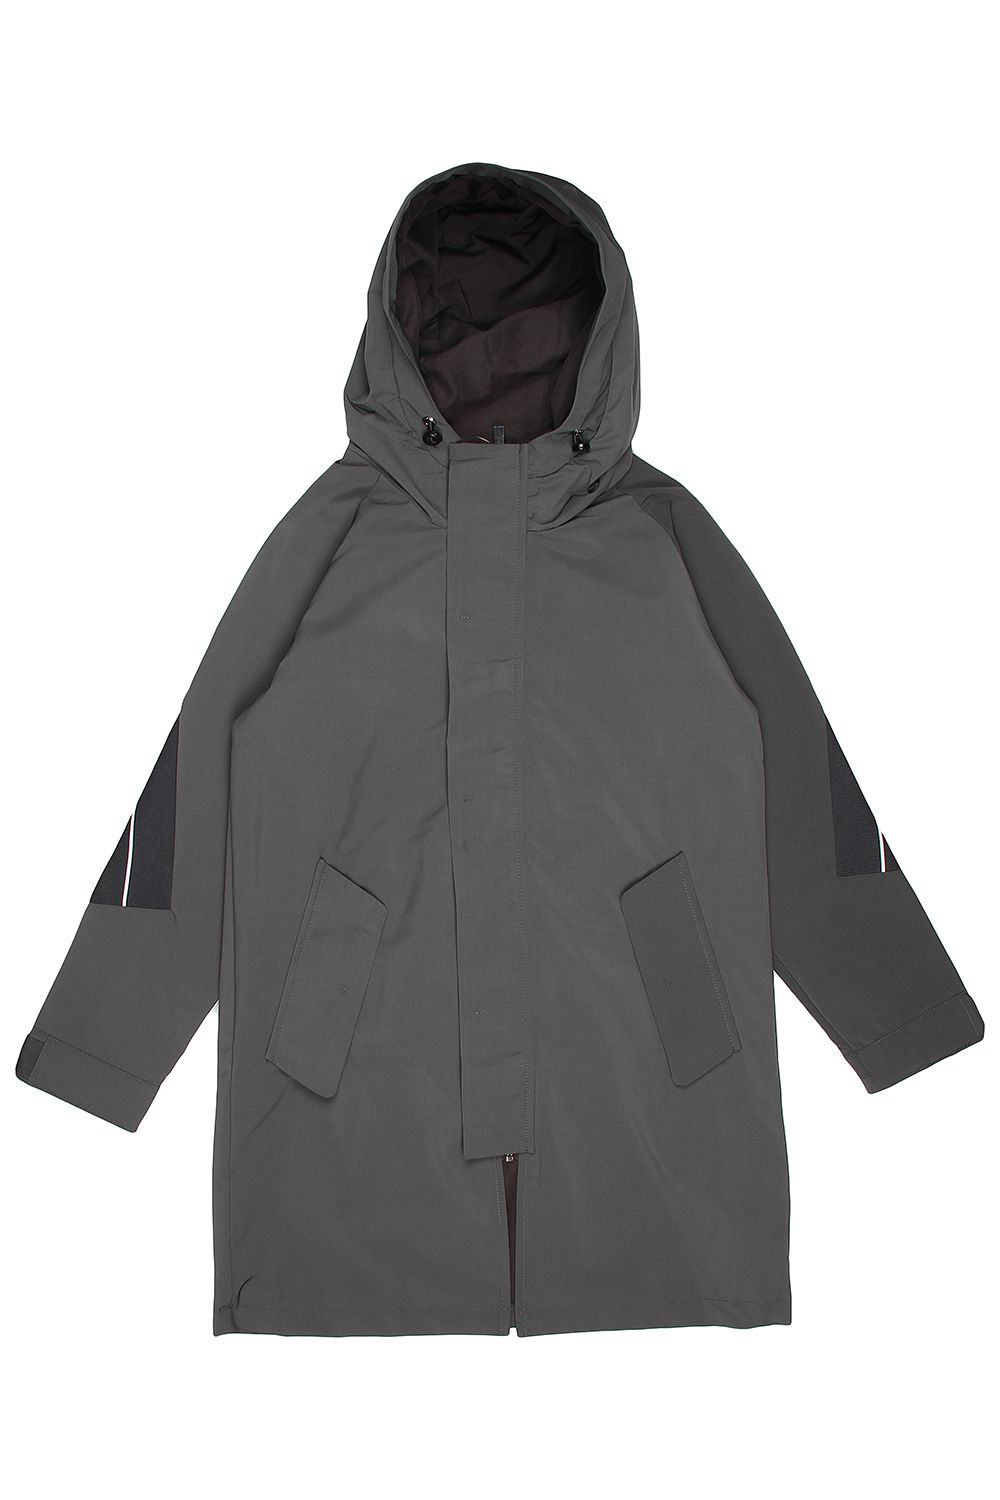 Куртка Noble People, размер 134, цвет серый 18607-518 - фото 2